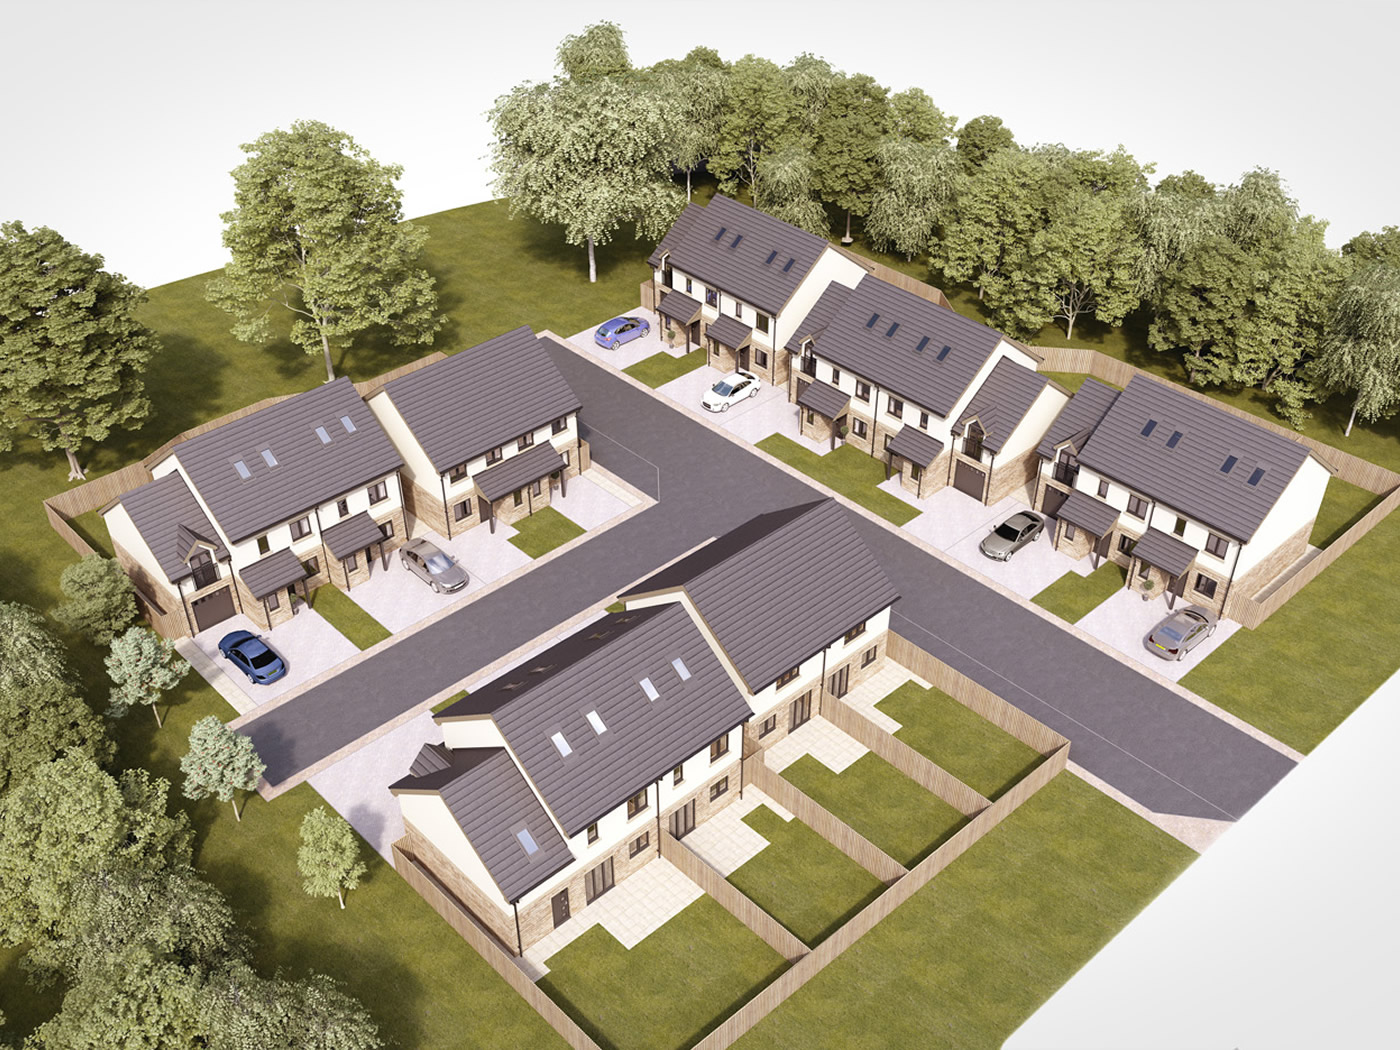 Ashland_Rd ilkley new homes